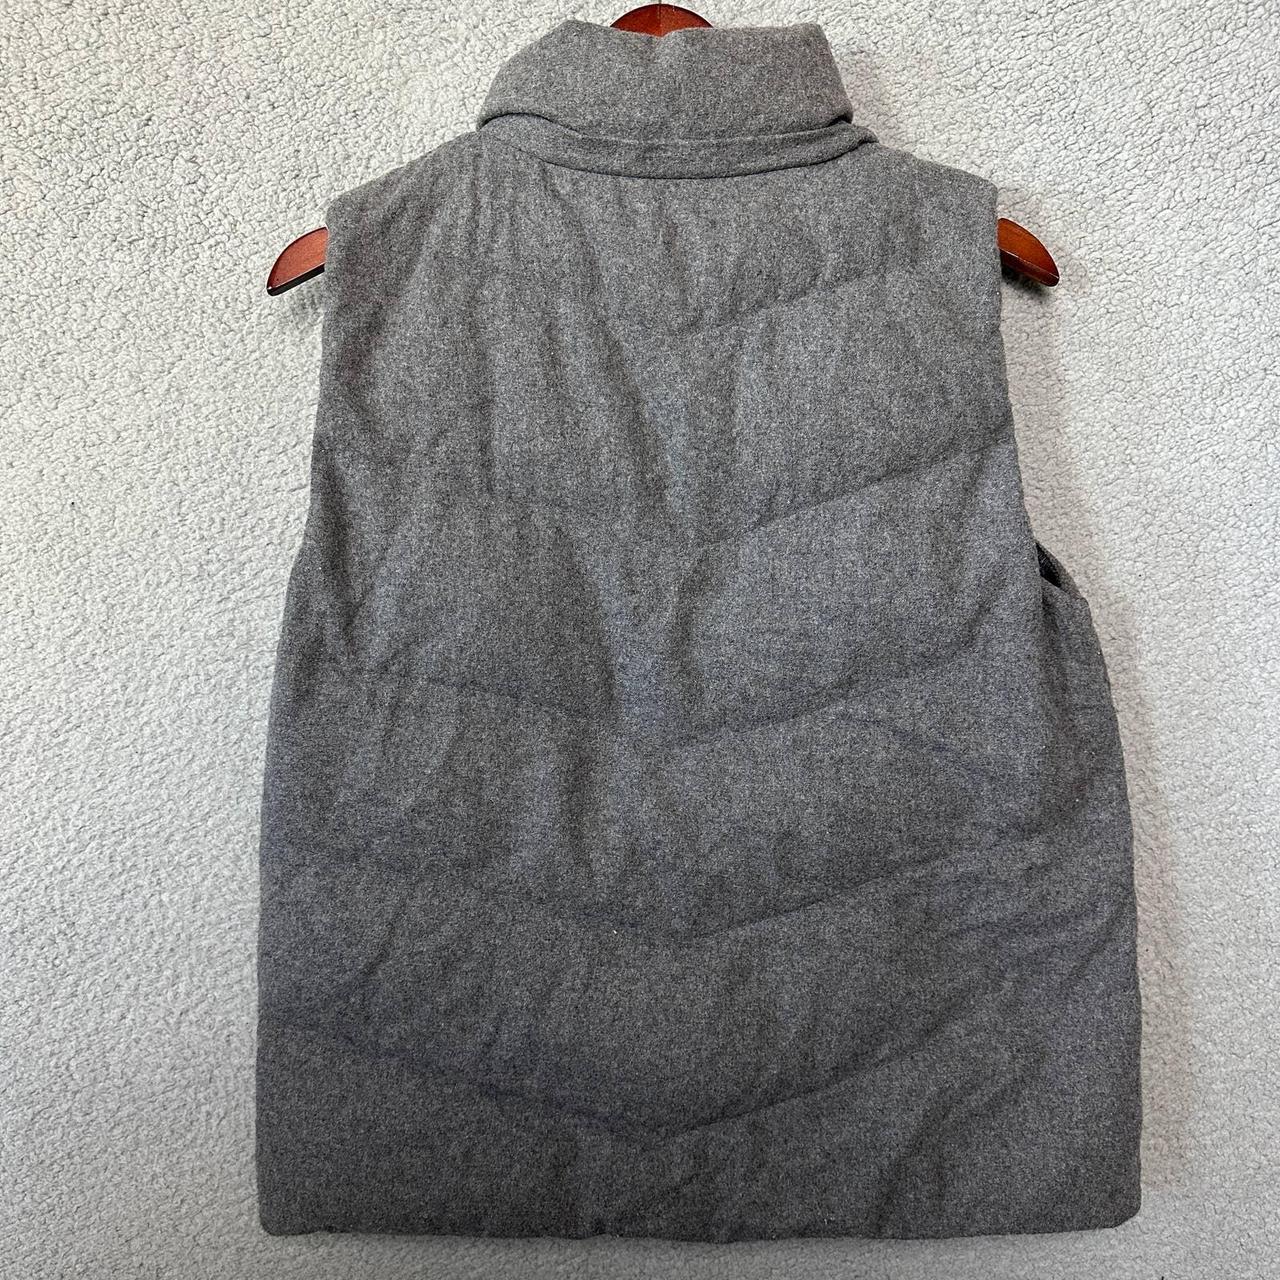 Product Image 2 - GAP Puffer Vest Adult L